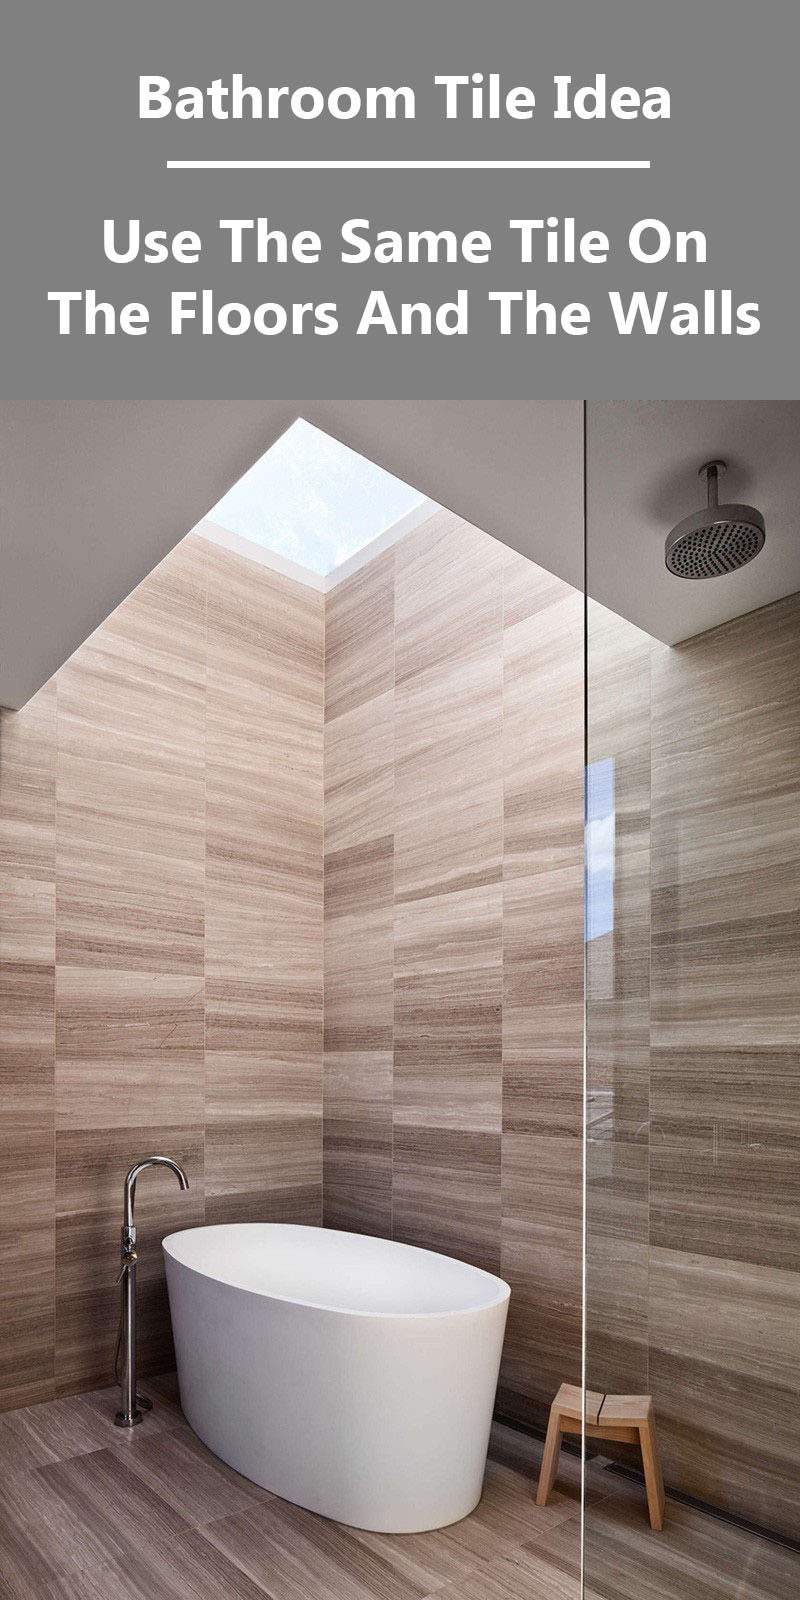 Идея плитки для ванной - используйте одну и ту же плитку на полу и стенах